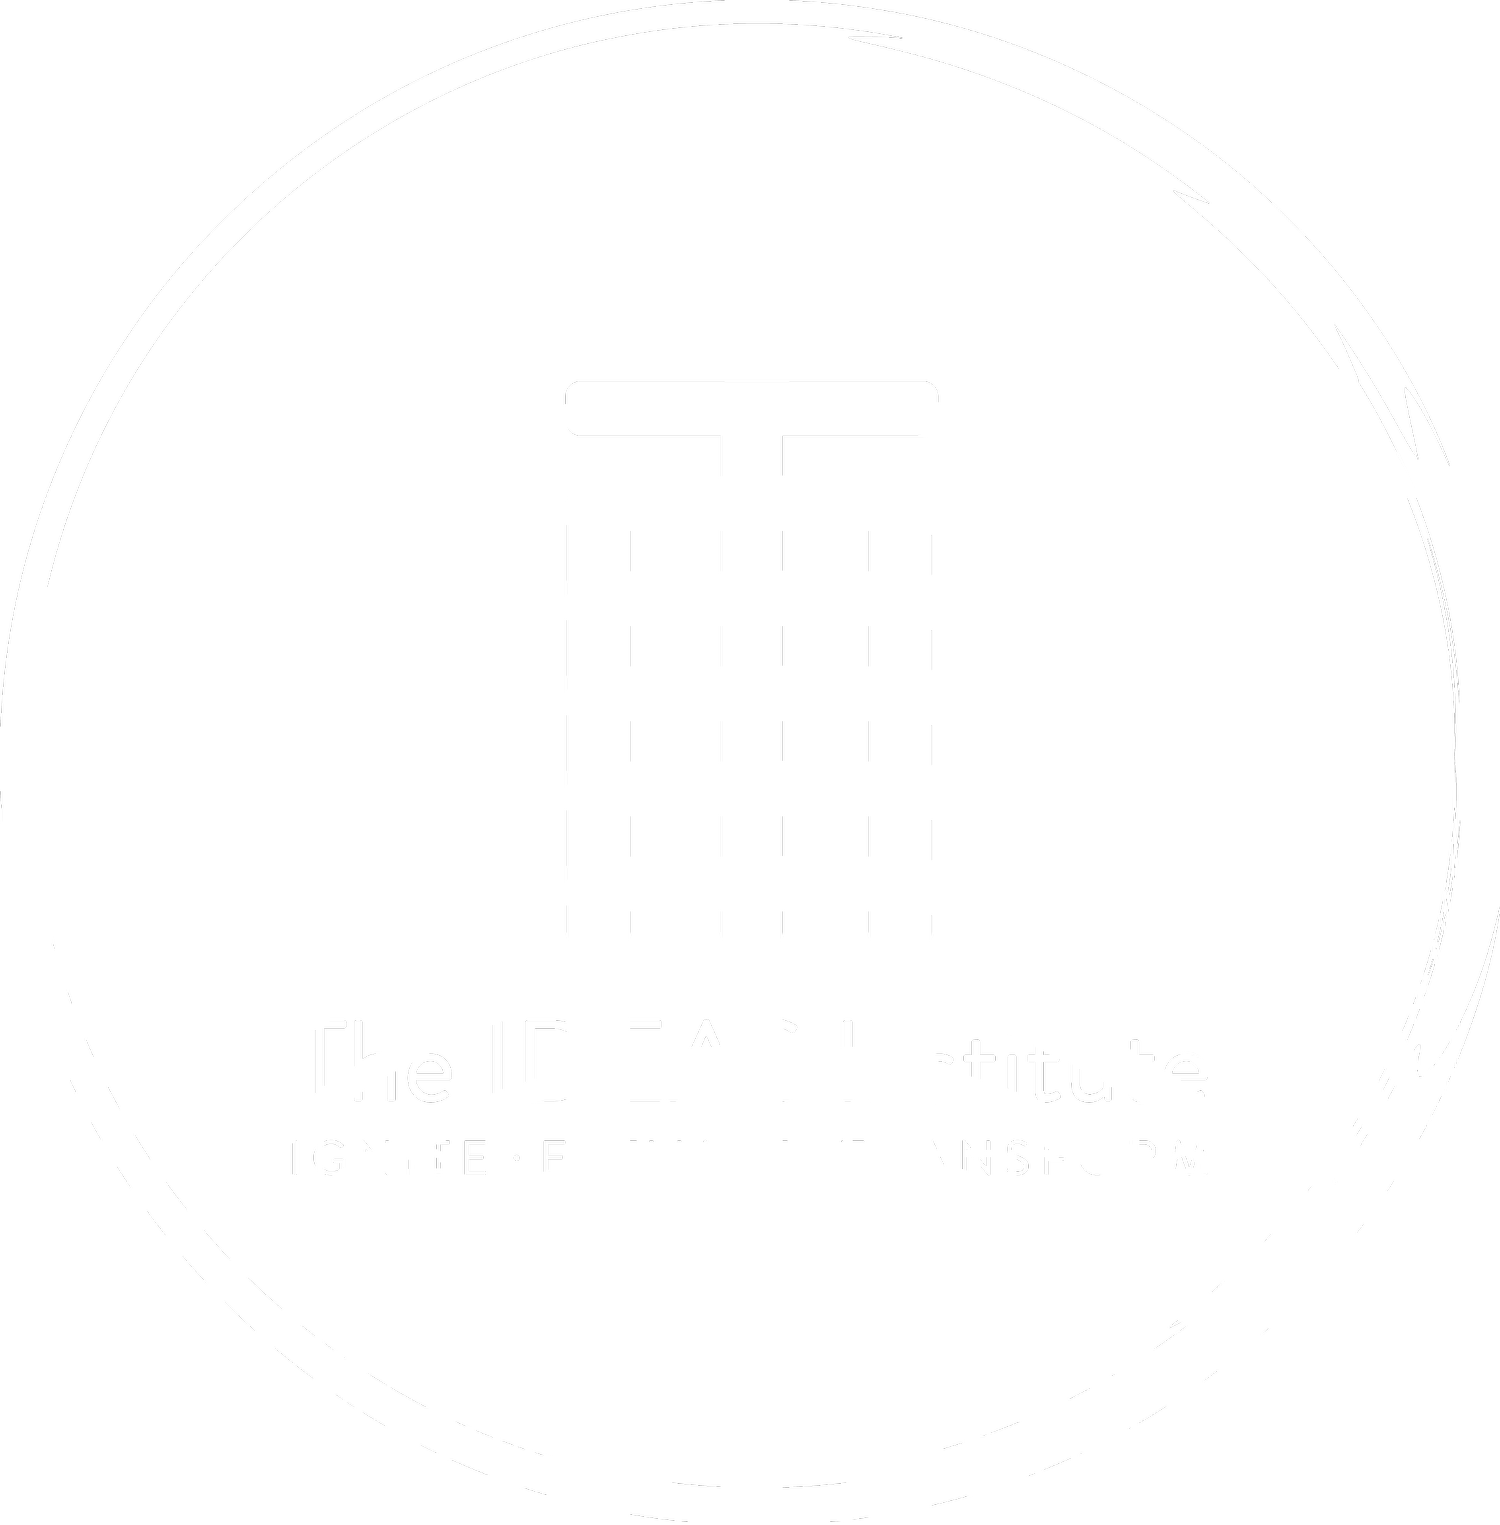 The IDEAS Institute